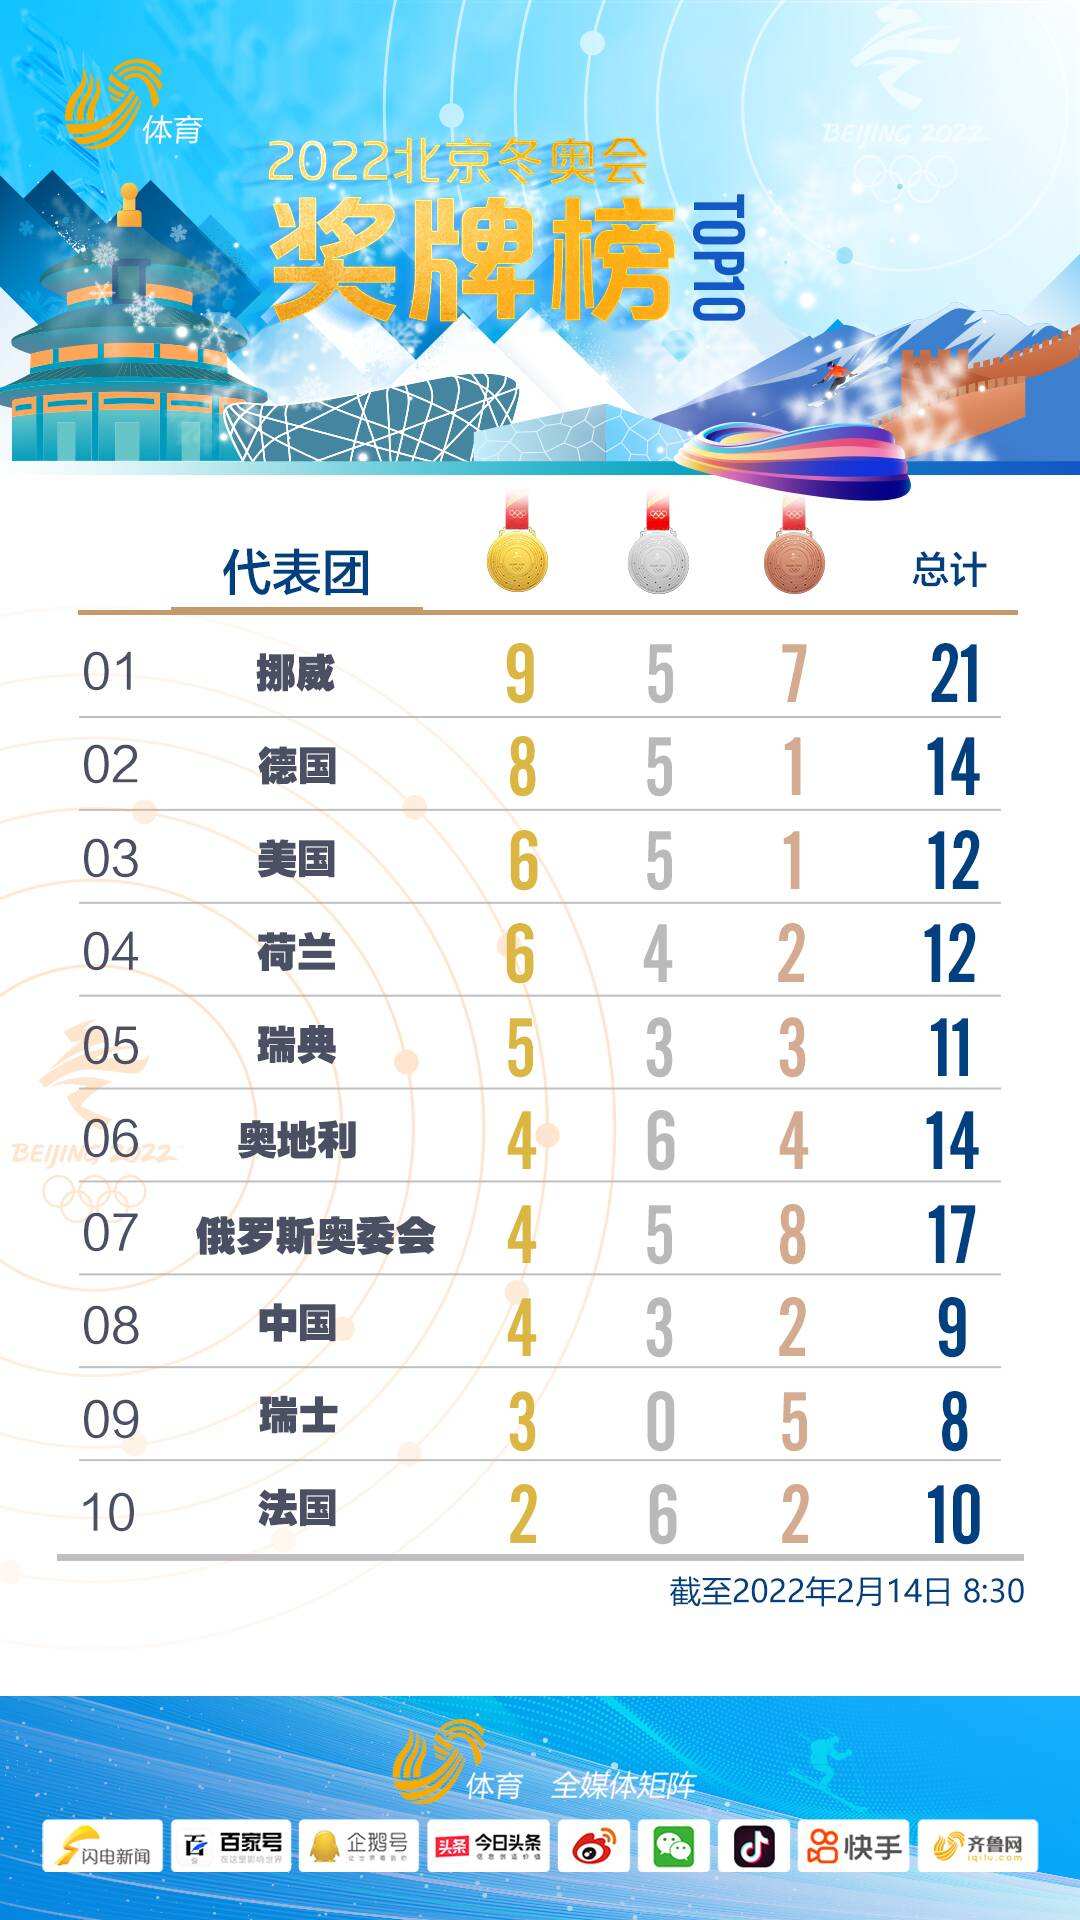 中国锁定冬奥会金牌榜第三，中国锁定冬奥会金牌榜第三谷爱凌！